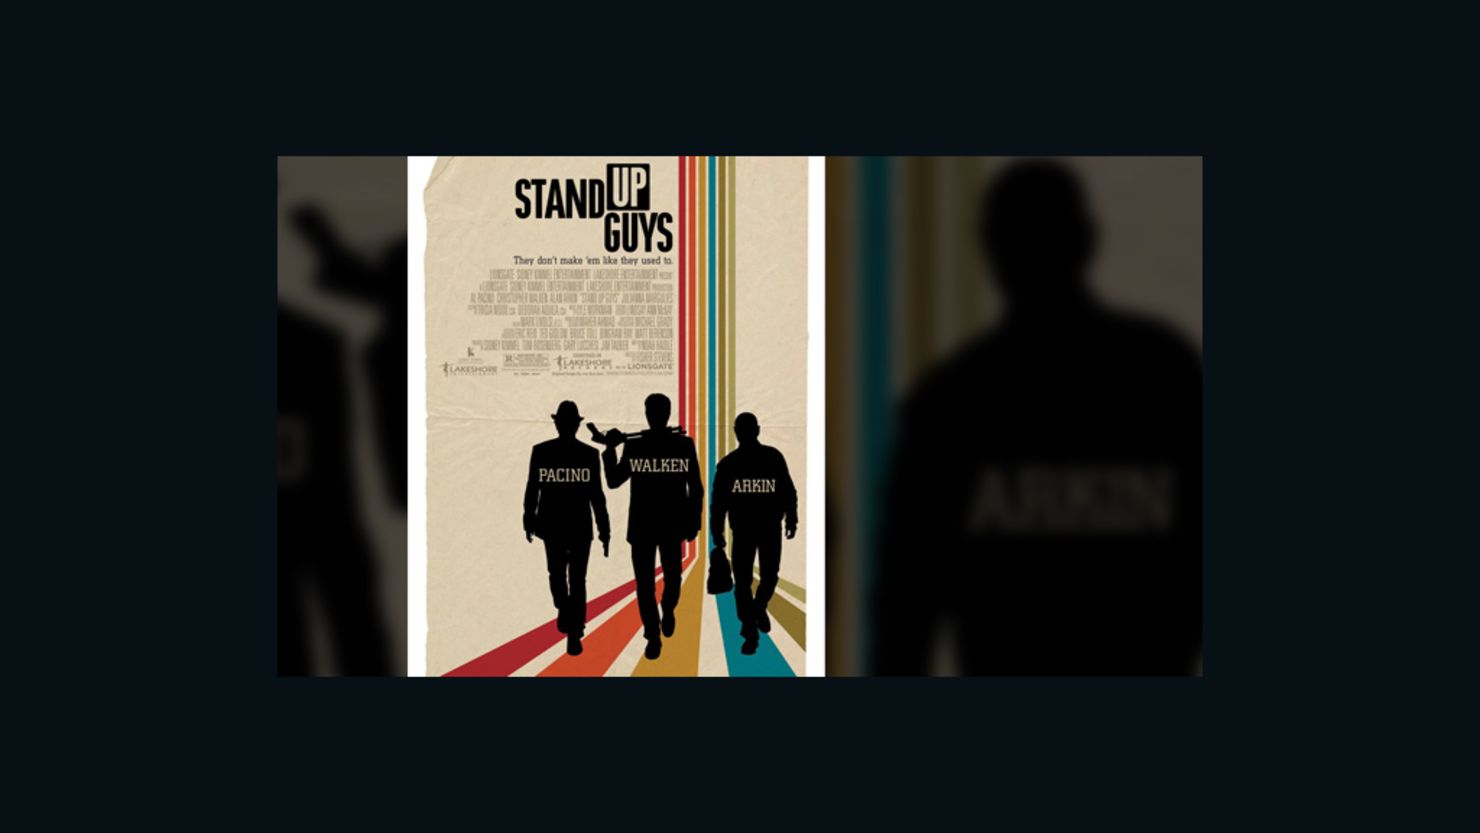 Al Pacino, Christopher Walken and Alan Arkin star in "Stand Up Guys."